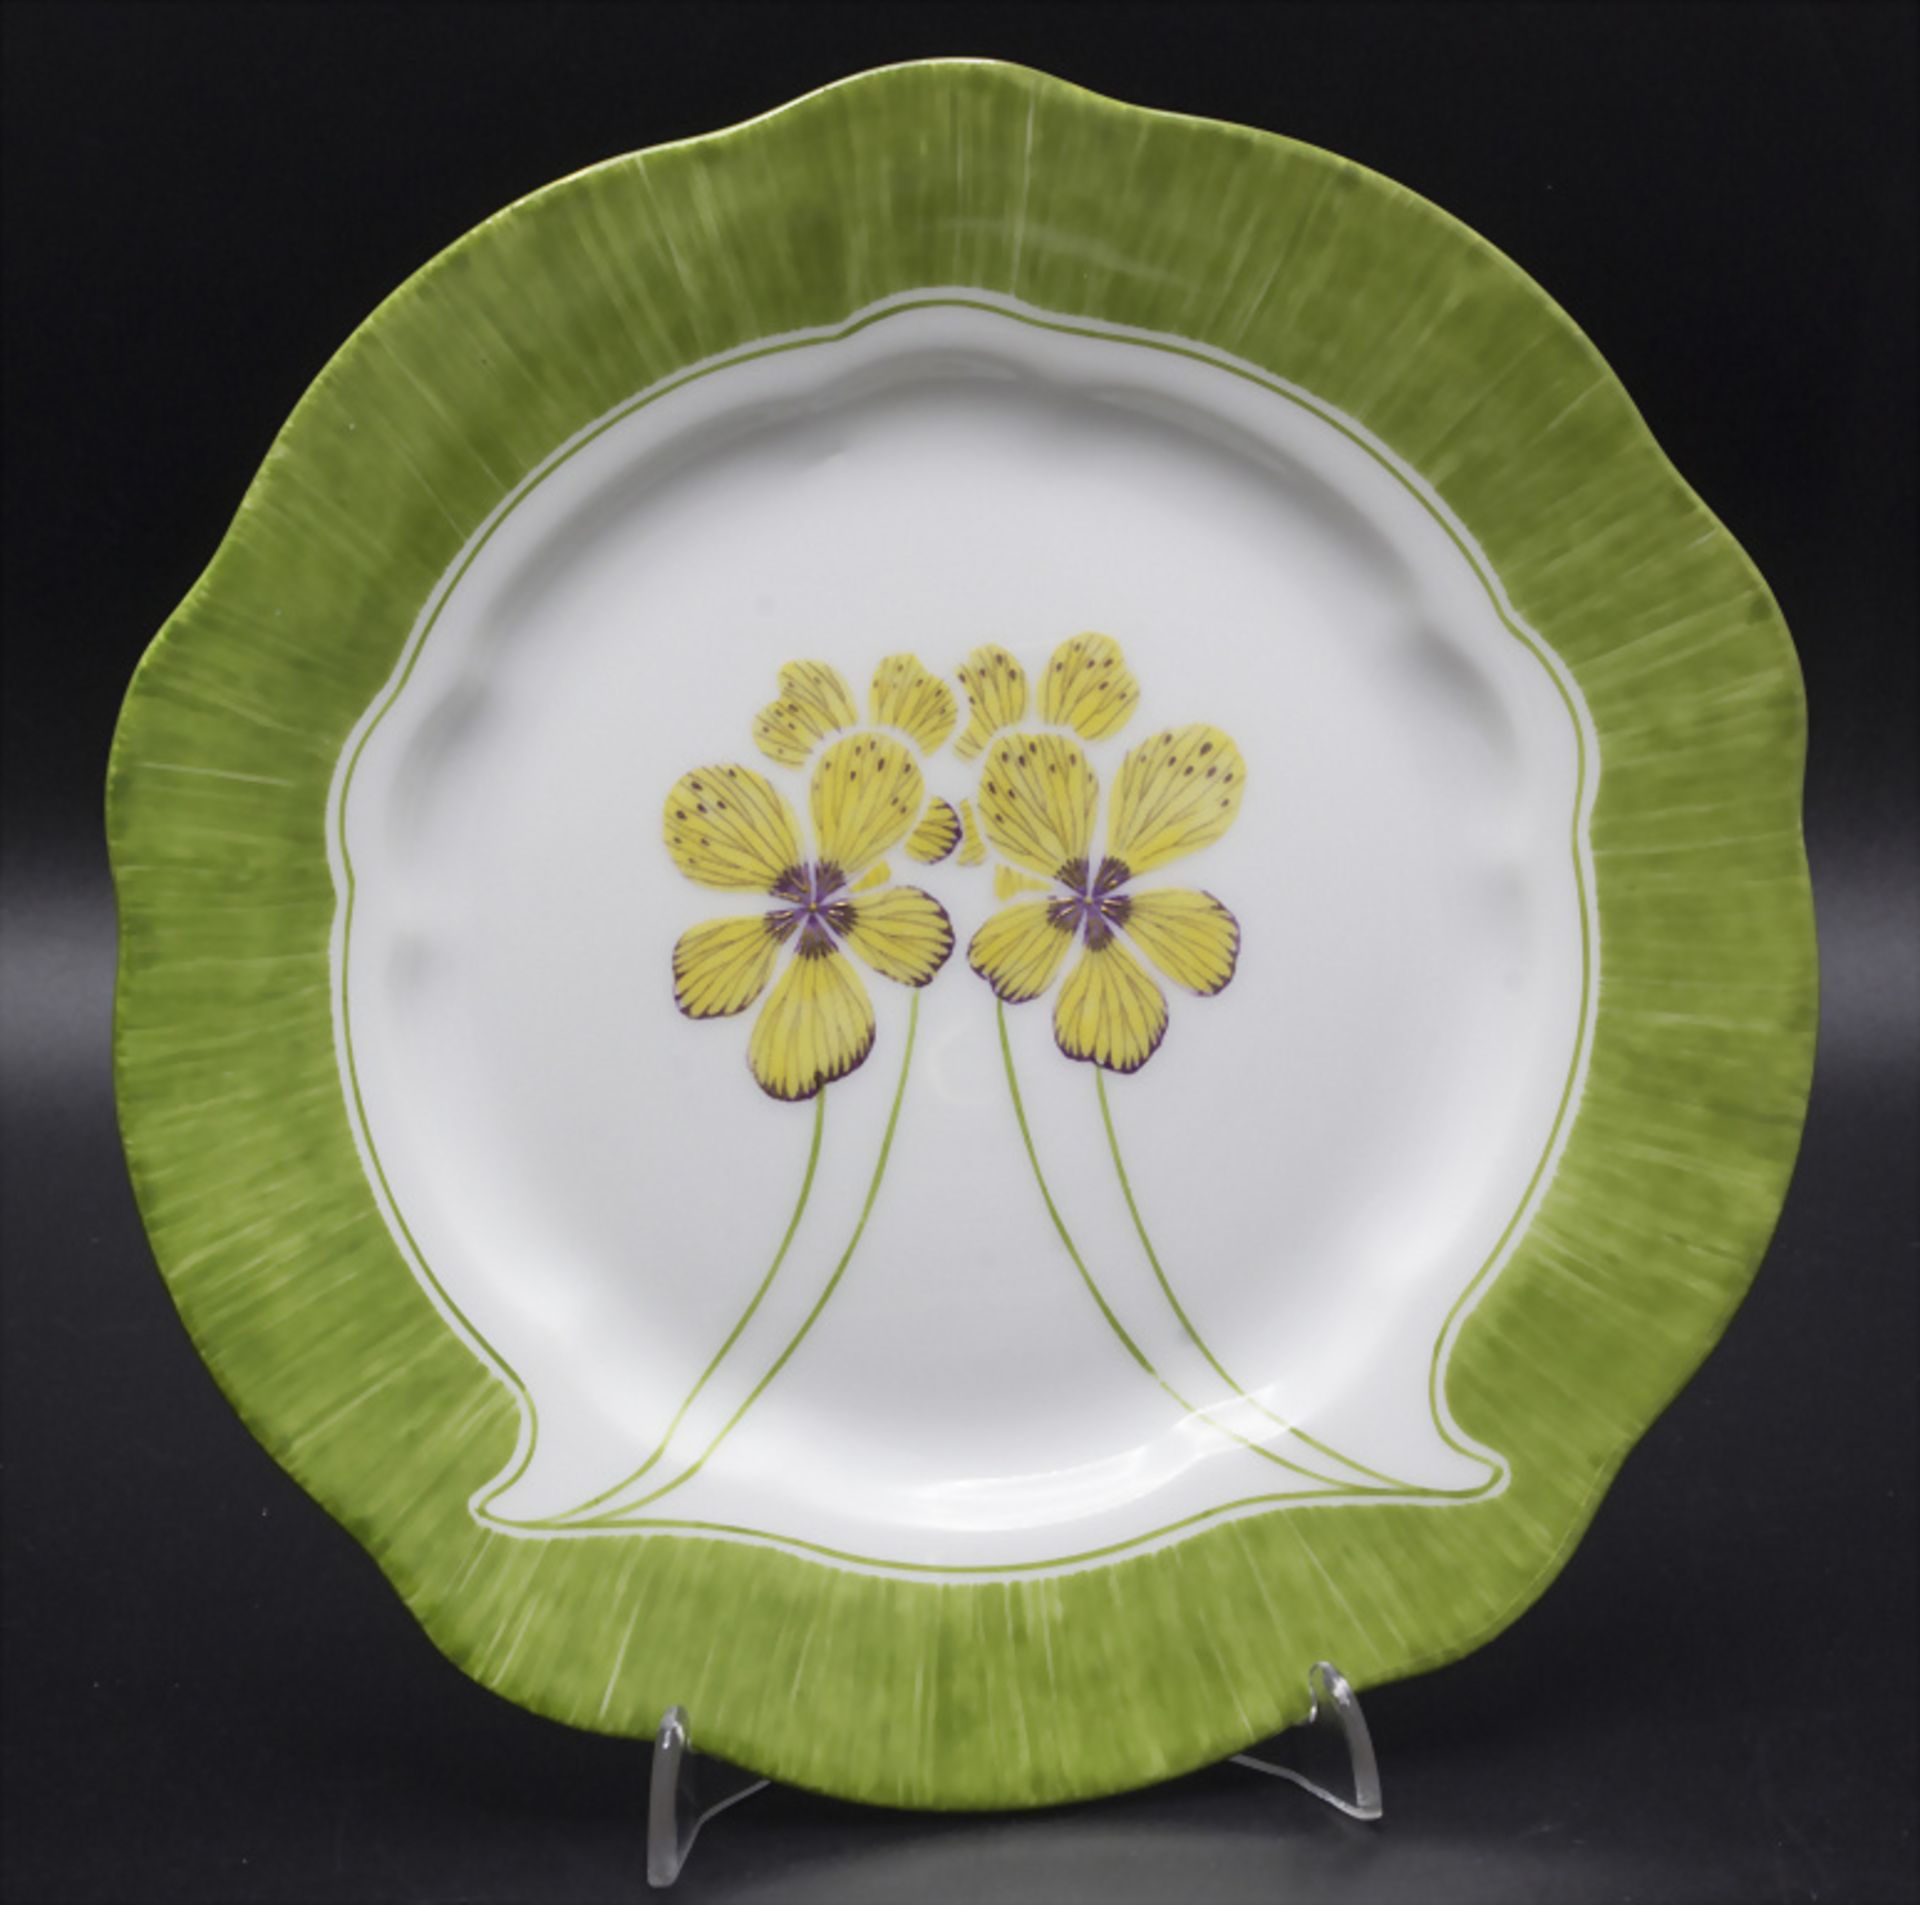 Jugendstil Teller mit stilisierten Stiefmütterchen / An Art Nouveau plate with stylized ...